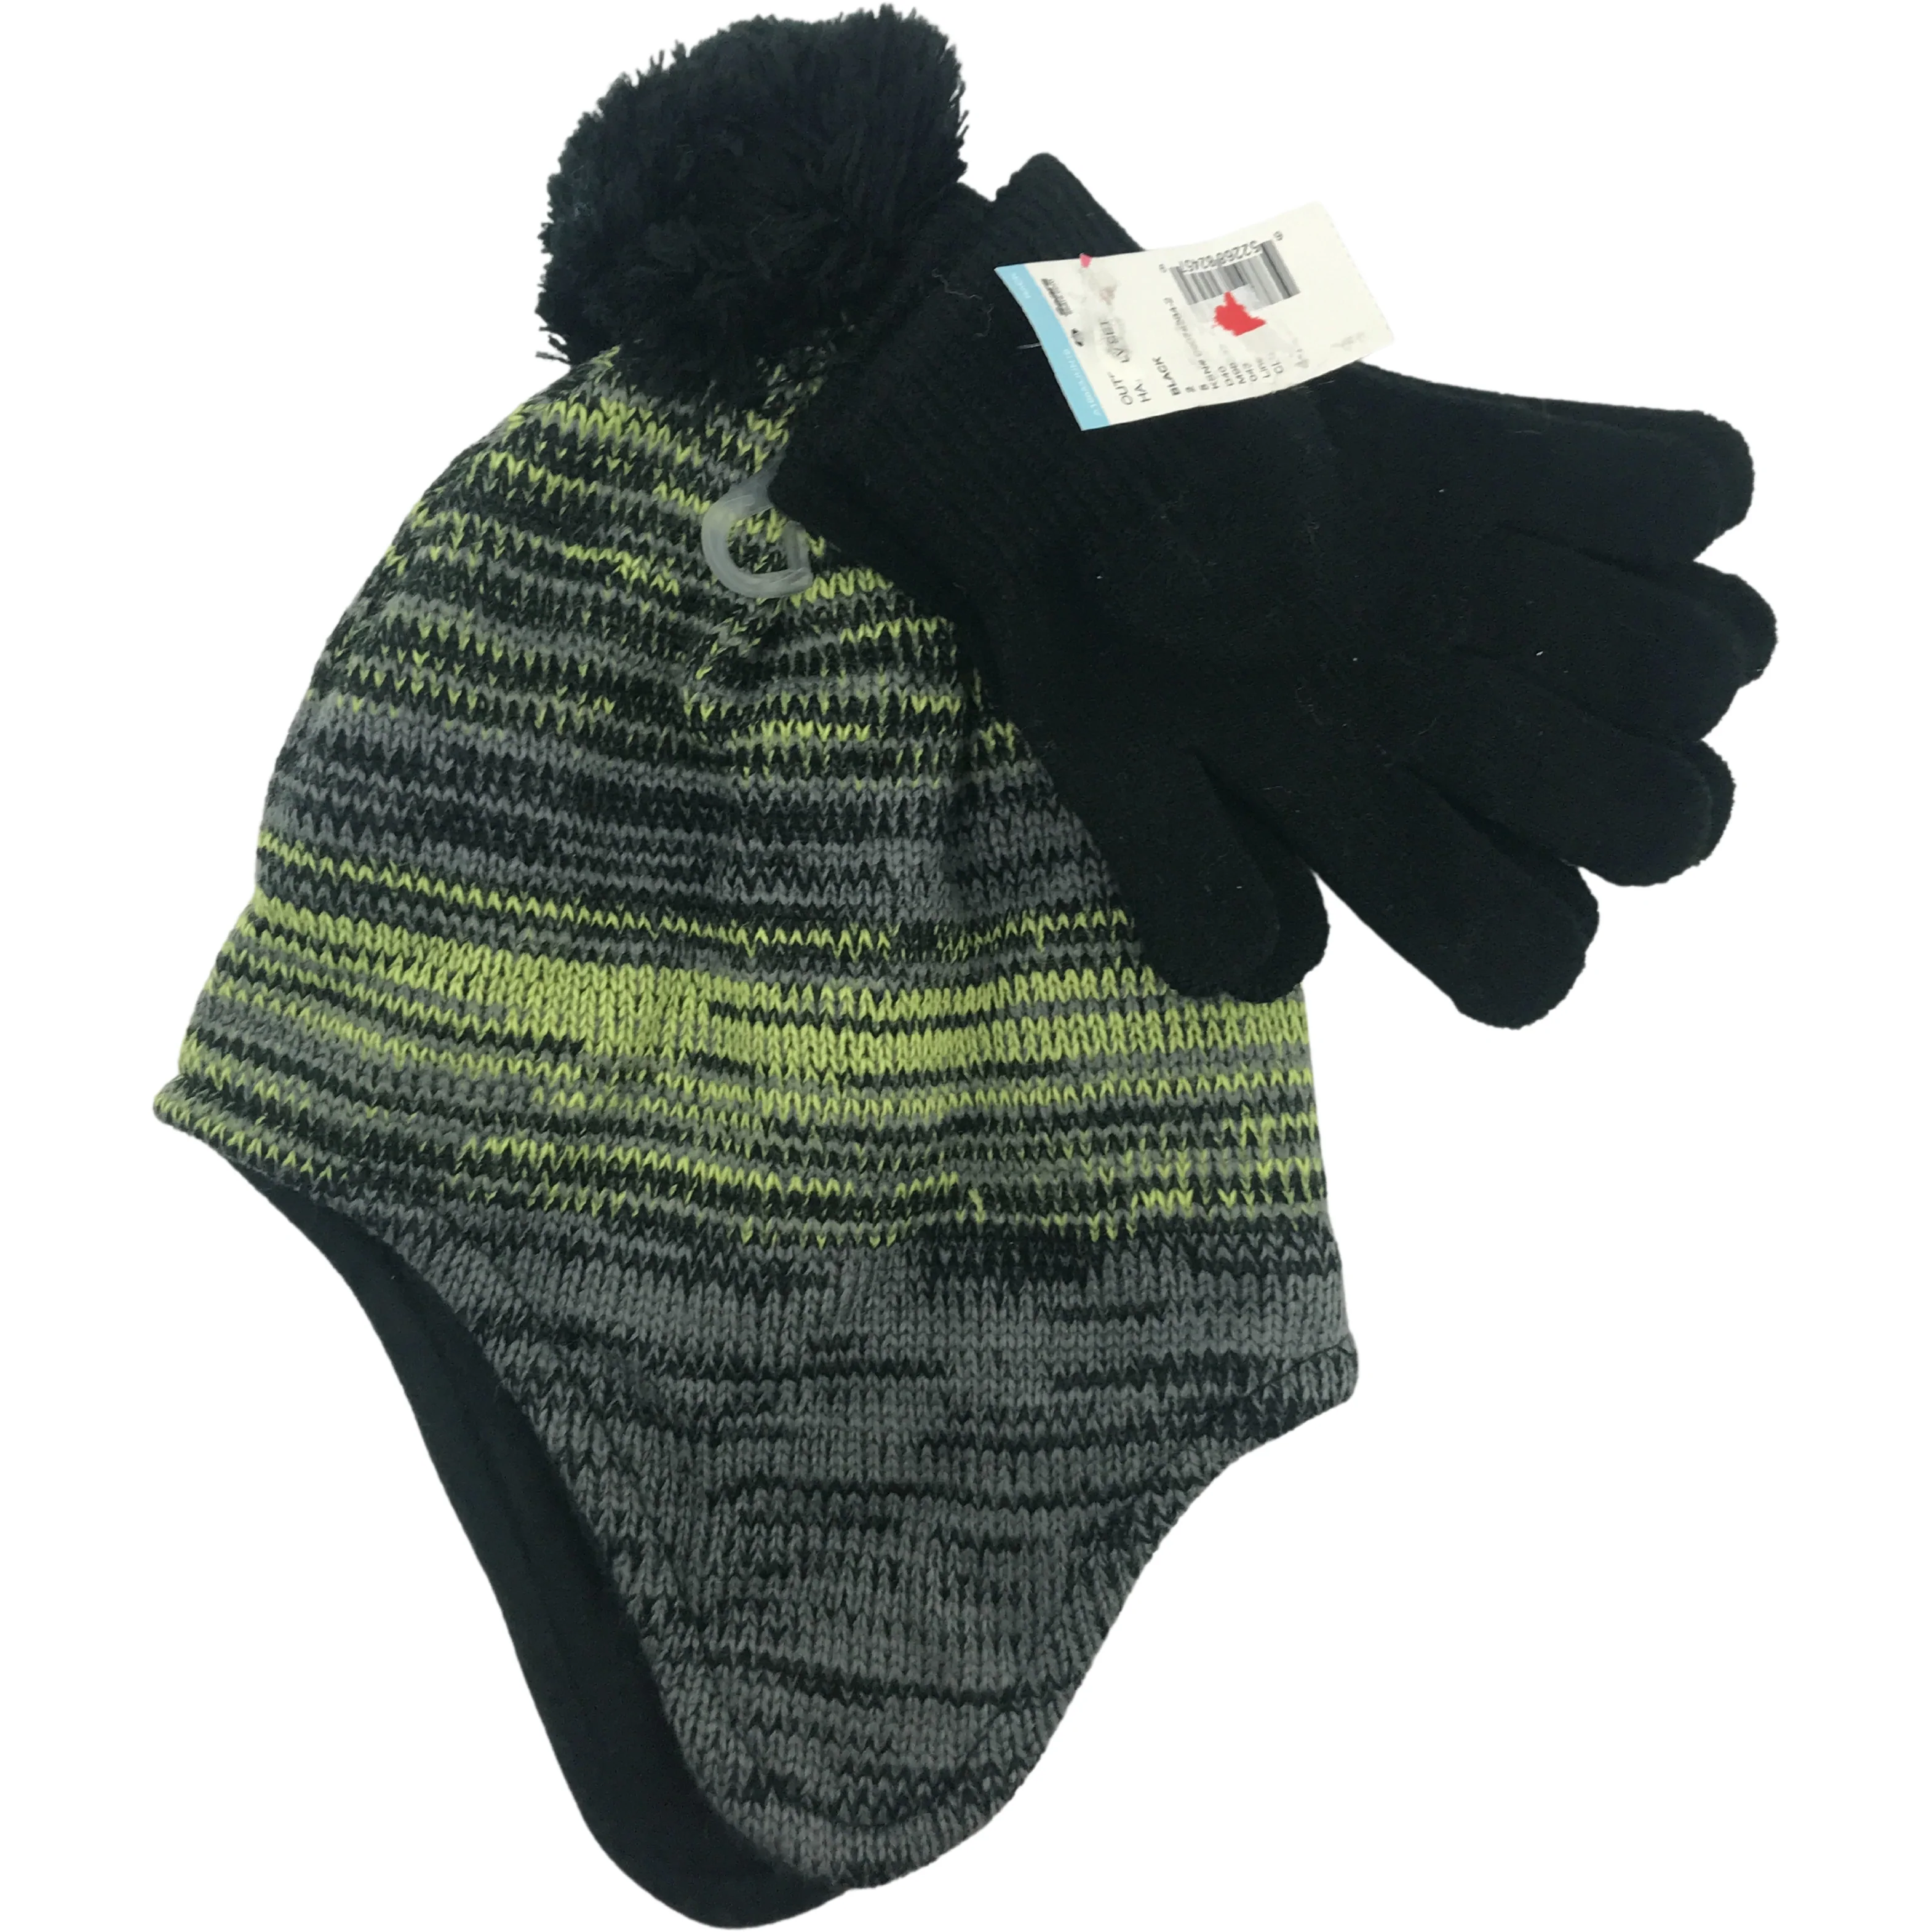 Children's Winter Hat & Glove Set / Boy's Toque / Grey & Green / Size 4-7